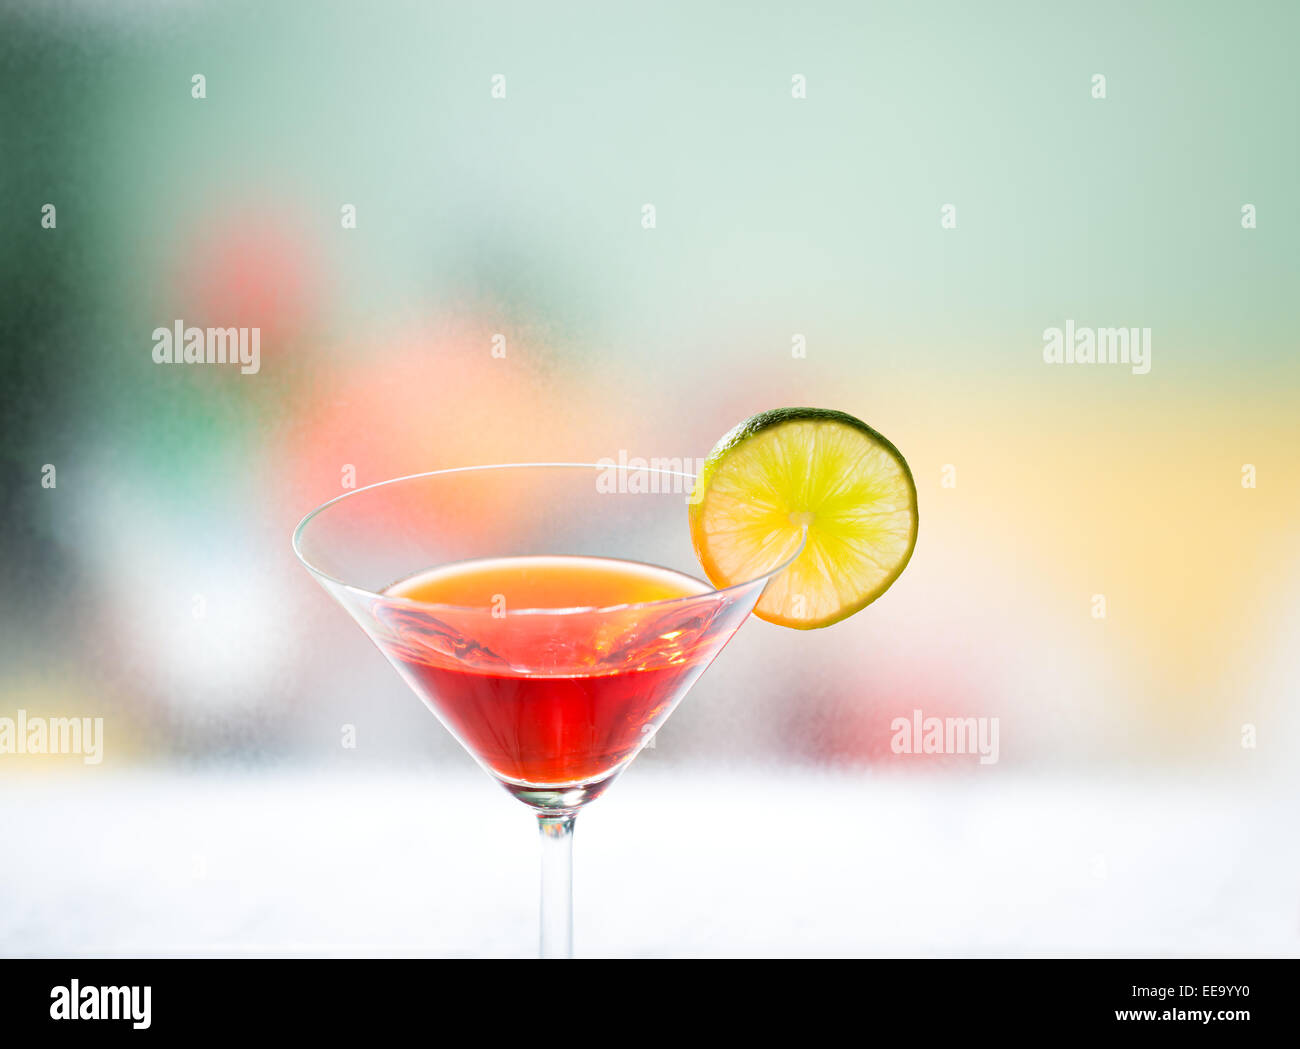 Drink Mix Zitrone rotes gelbes grün unscharf der Hintergrund bar Küche Essen trinken alkoholische Mixgetränk Symbol symbolisch-Ort für t Stockfoto